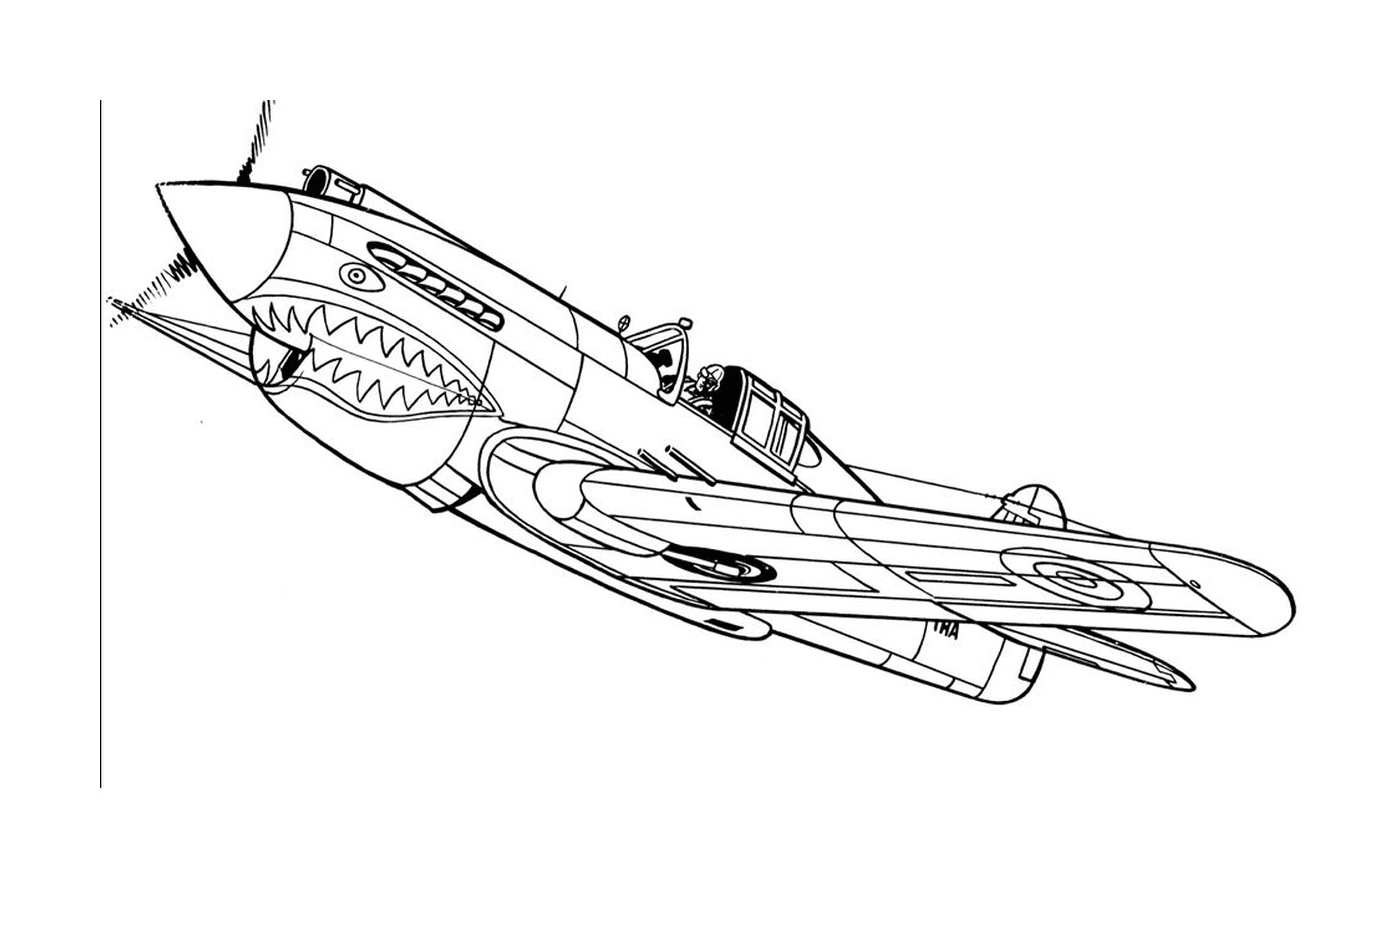  Ein Flugzeug fliegt mit einem Haimund in die Luft 